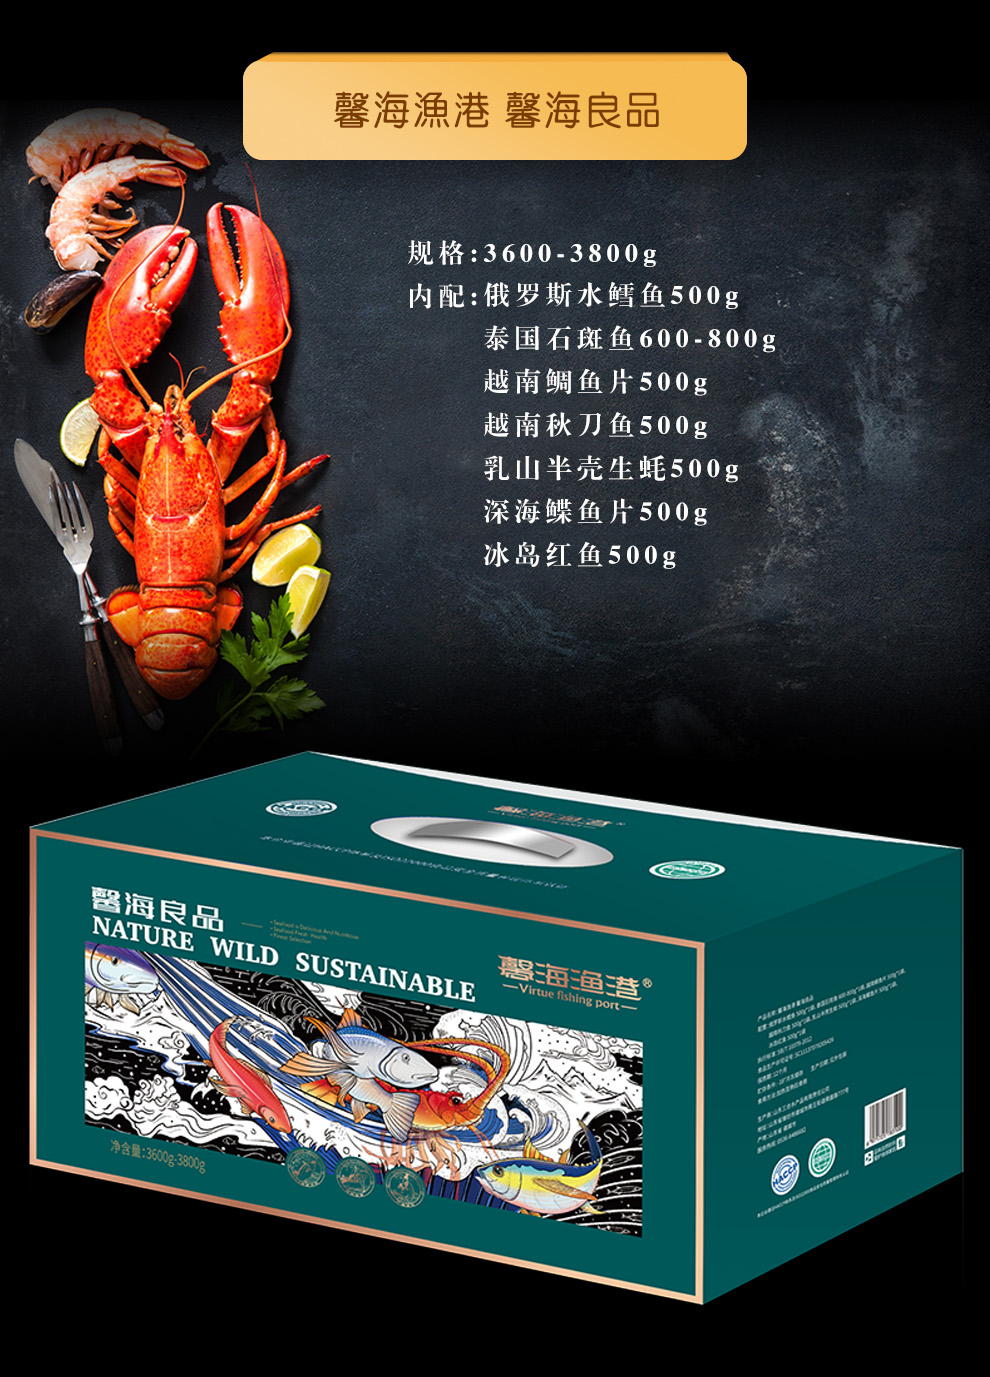 海鲜礼盒宣传广告语图片